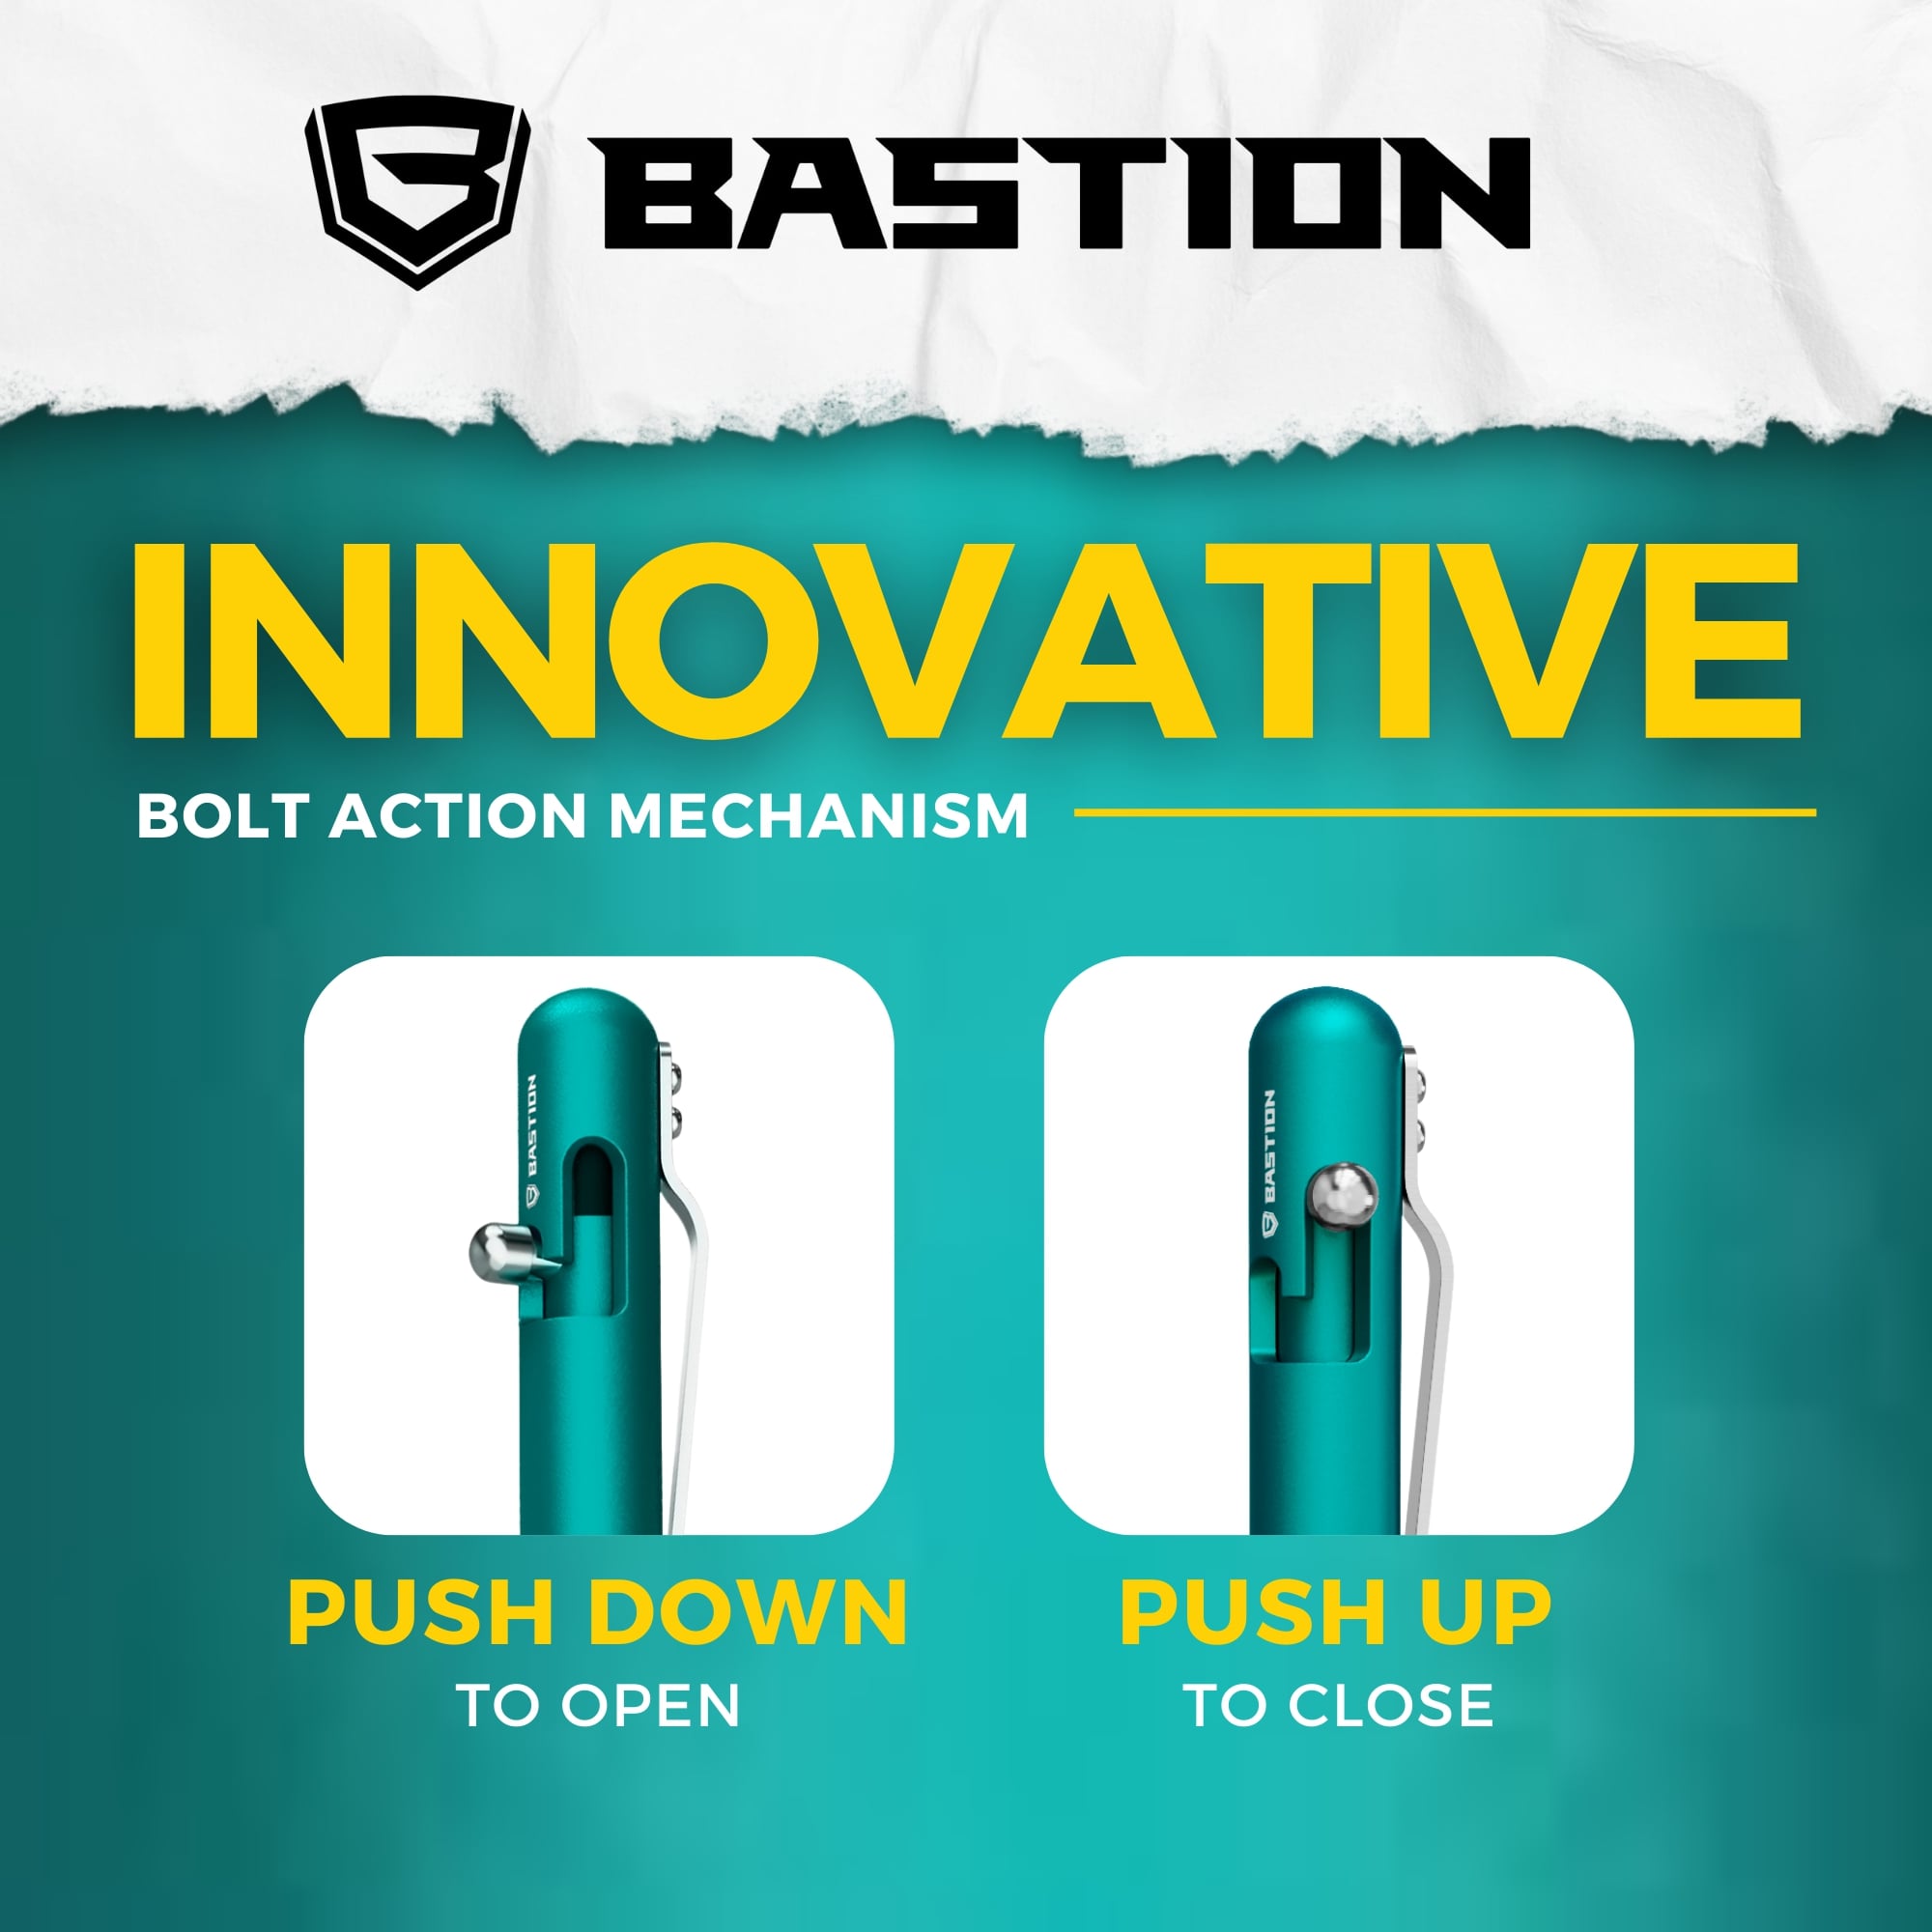 Aluminum - Bolt Action Pen by Bastion®